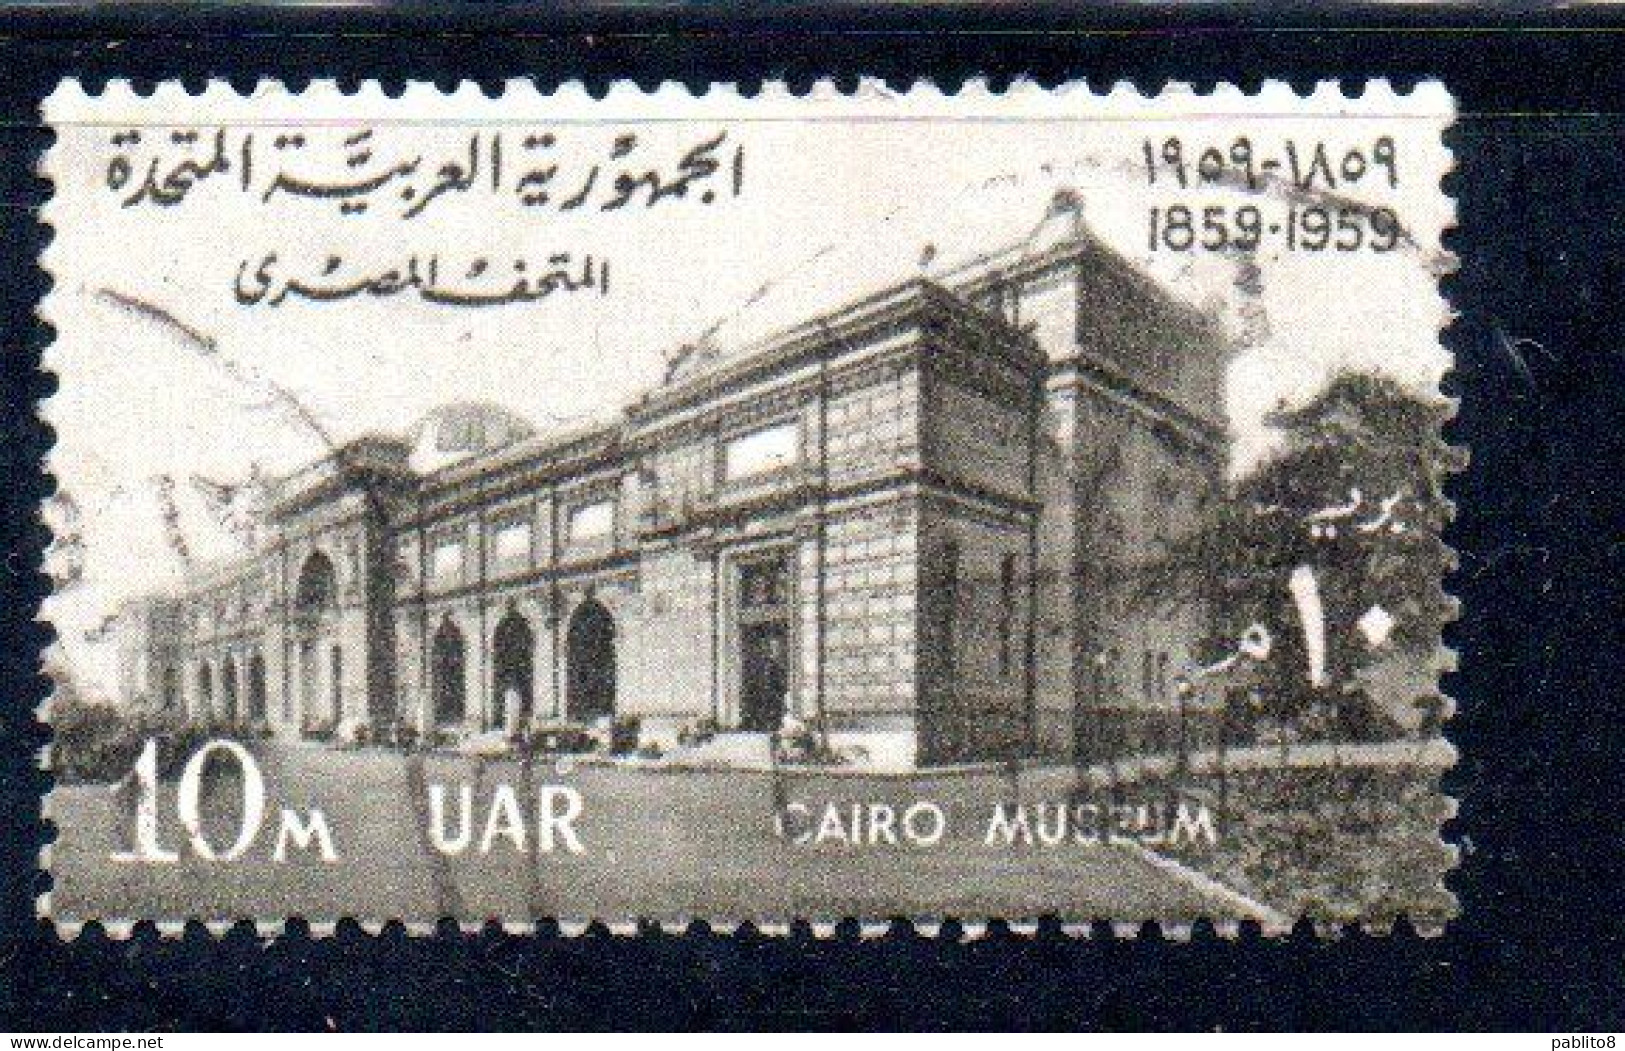 UAR EGYPT EGITTO 1959 CENTENARY OF CAIRO MUSEUM 10m USED USATO OBLITERE' - Gebruikt